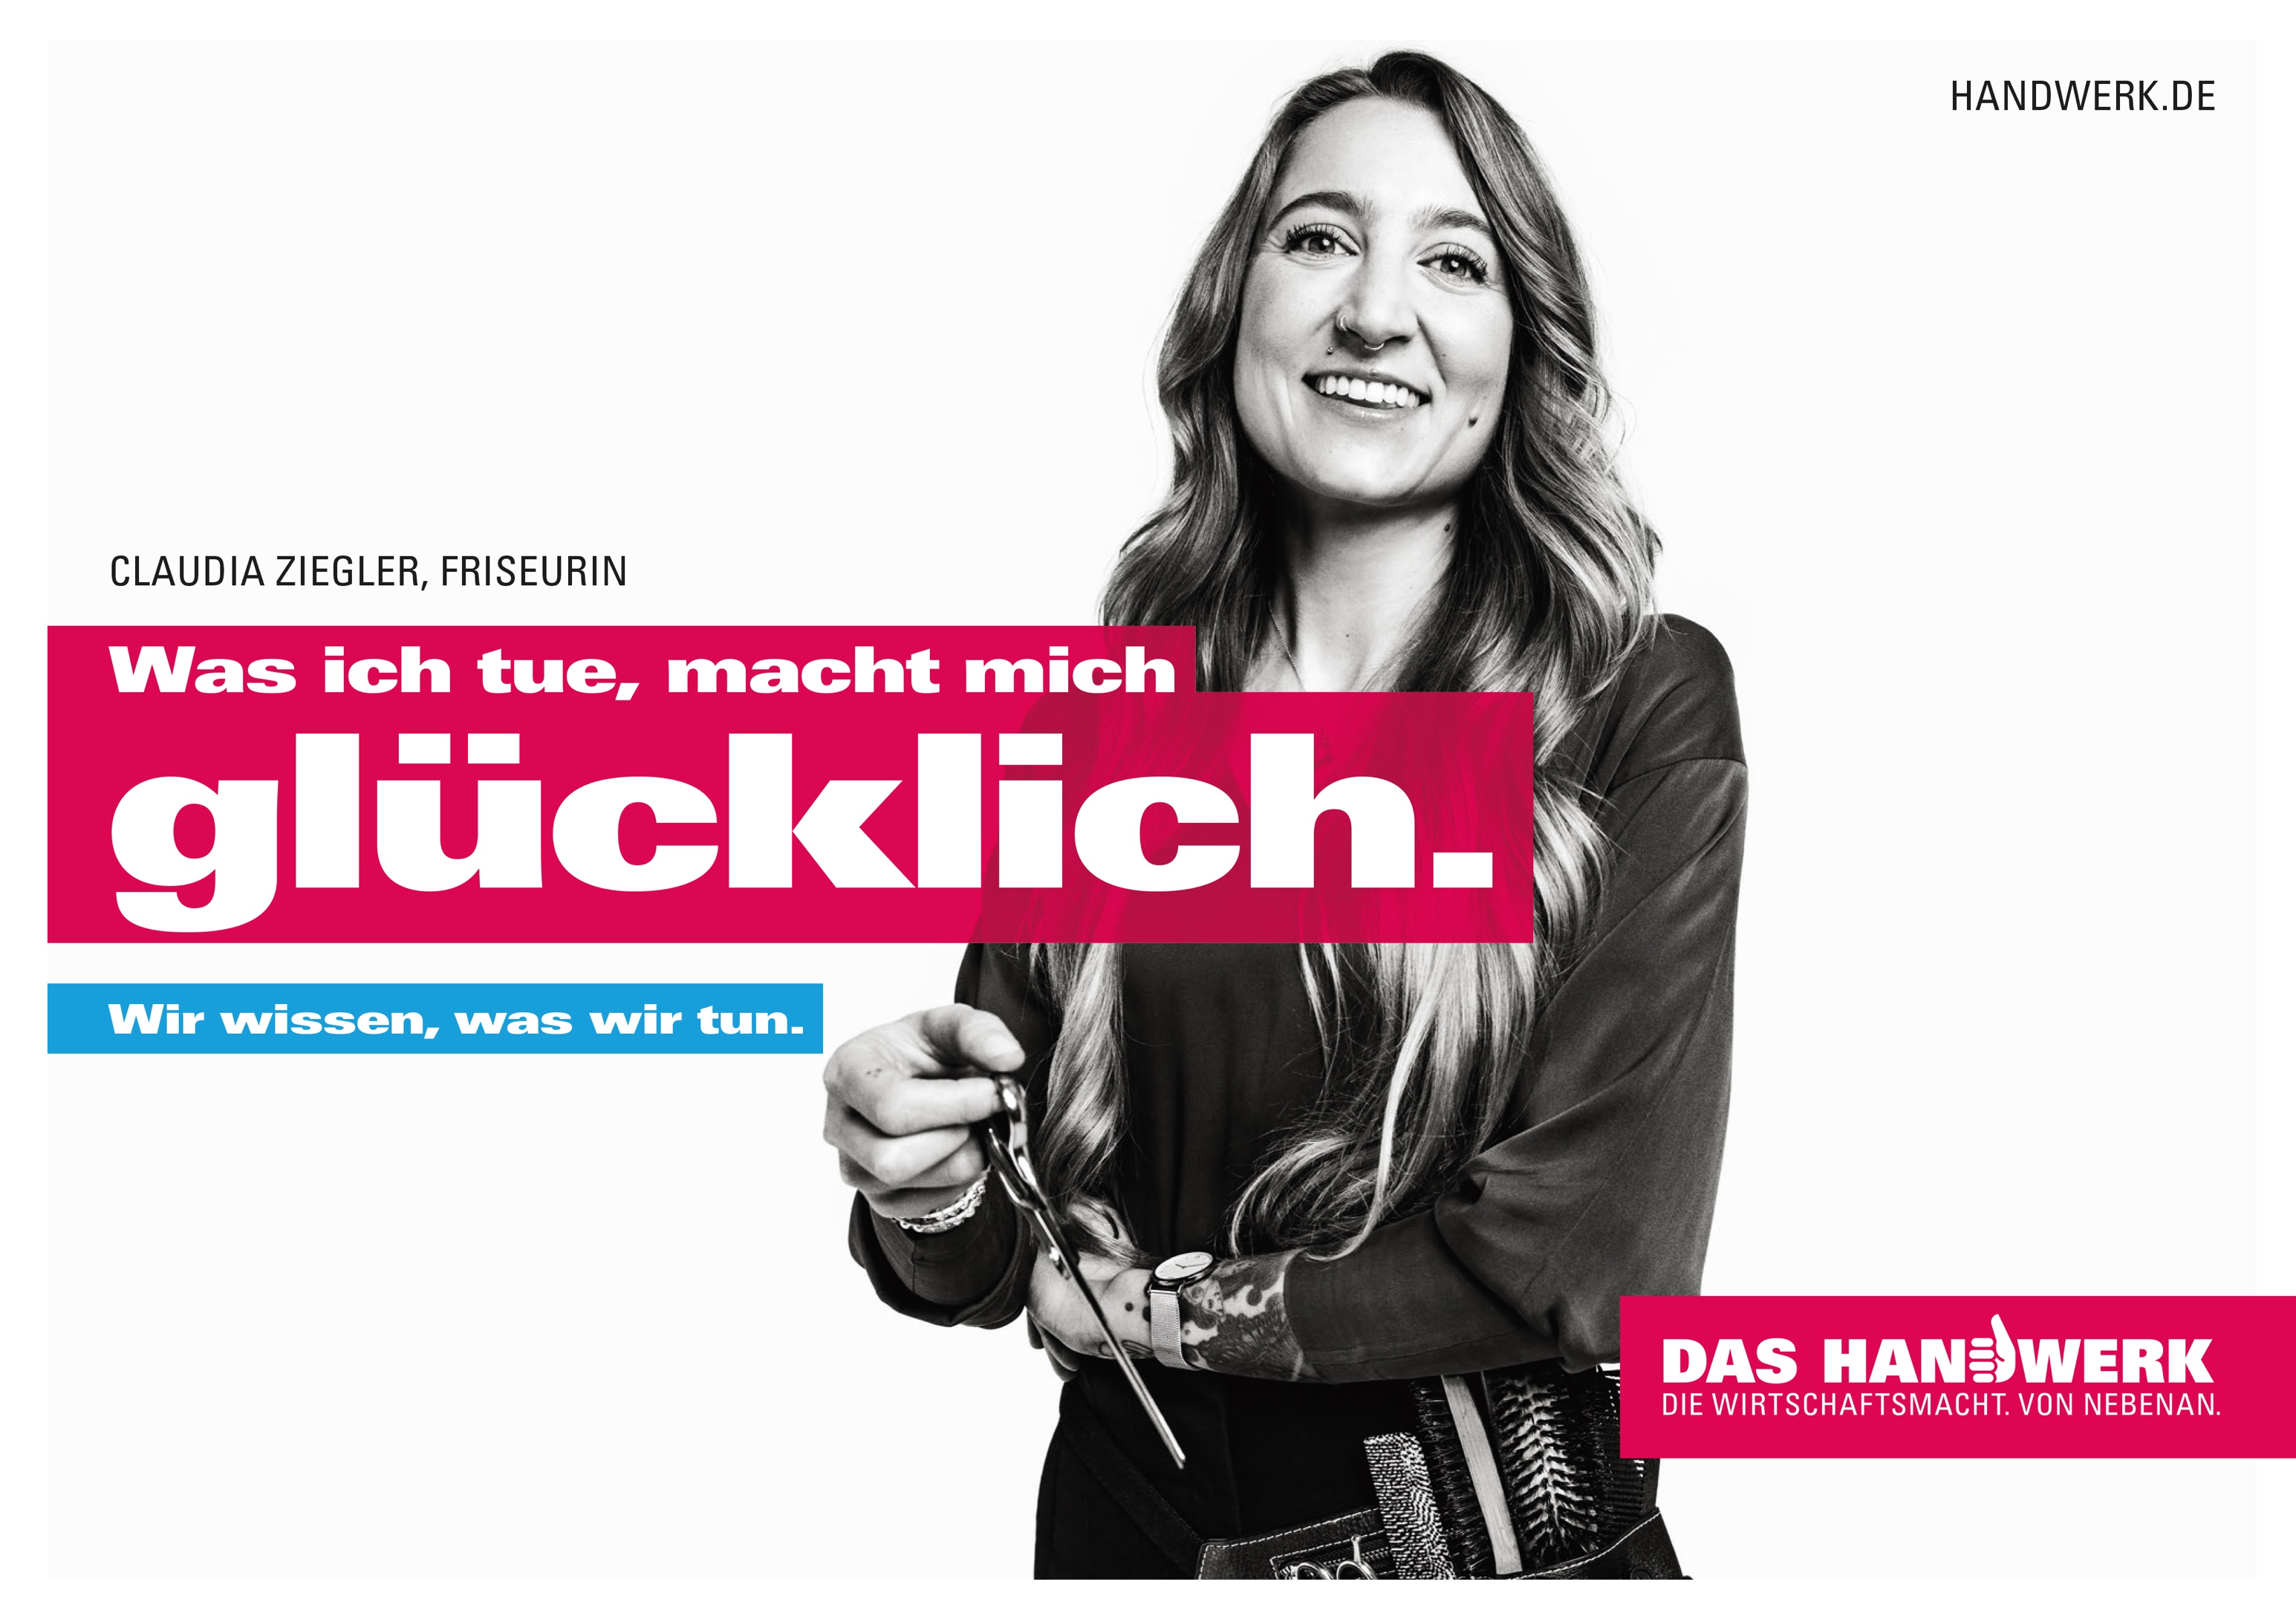 Ein Motiv der Imagekampagne des Handwerks. Foto: © DHKT / handwerk.de